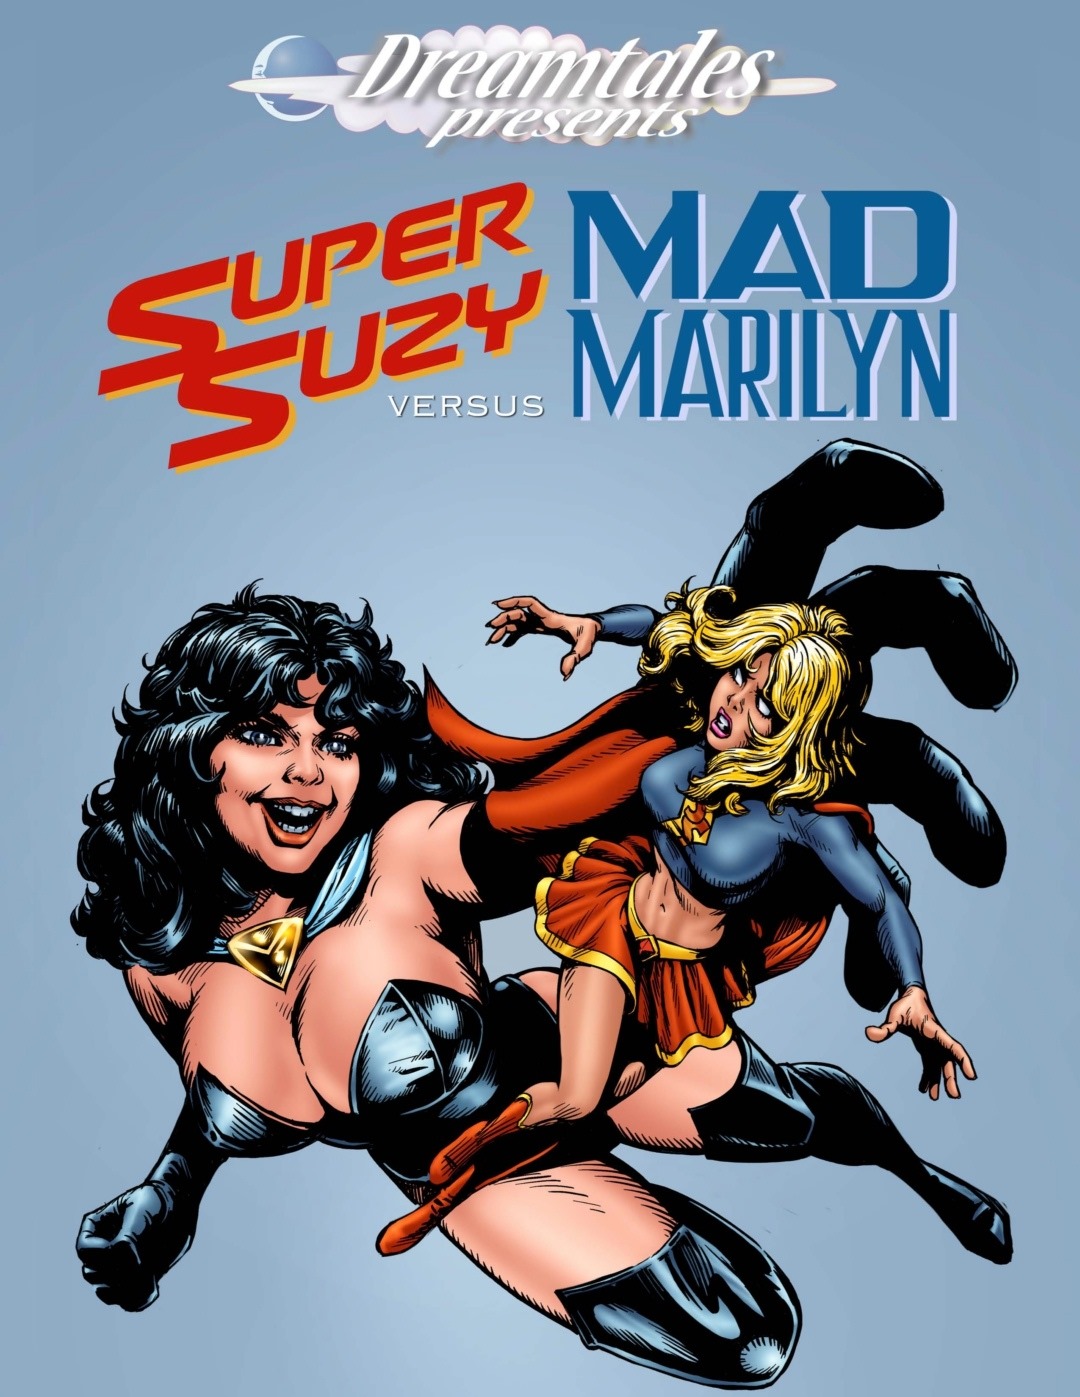 Porn Comics - Super Suzy Vs Mad Marilyn porn comics 8 muses